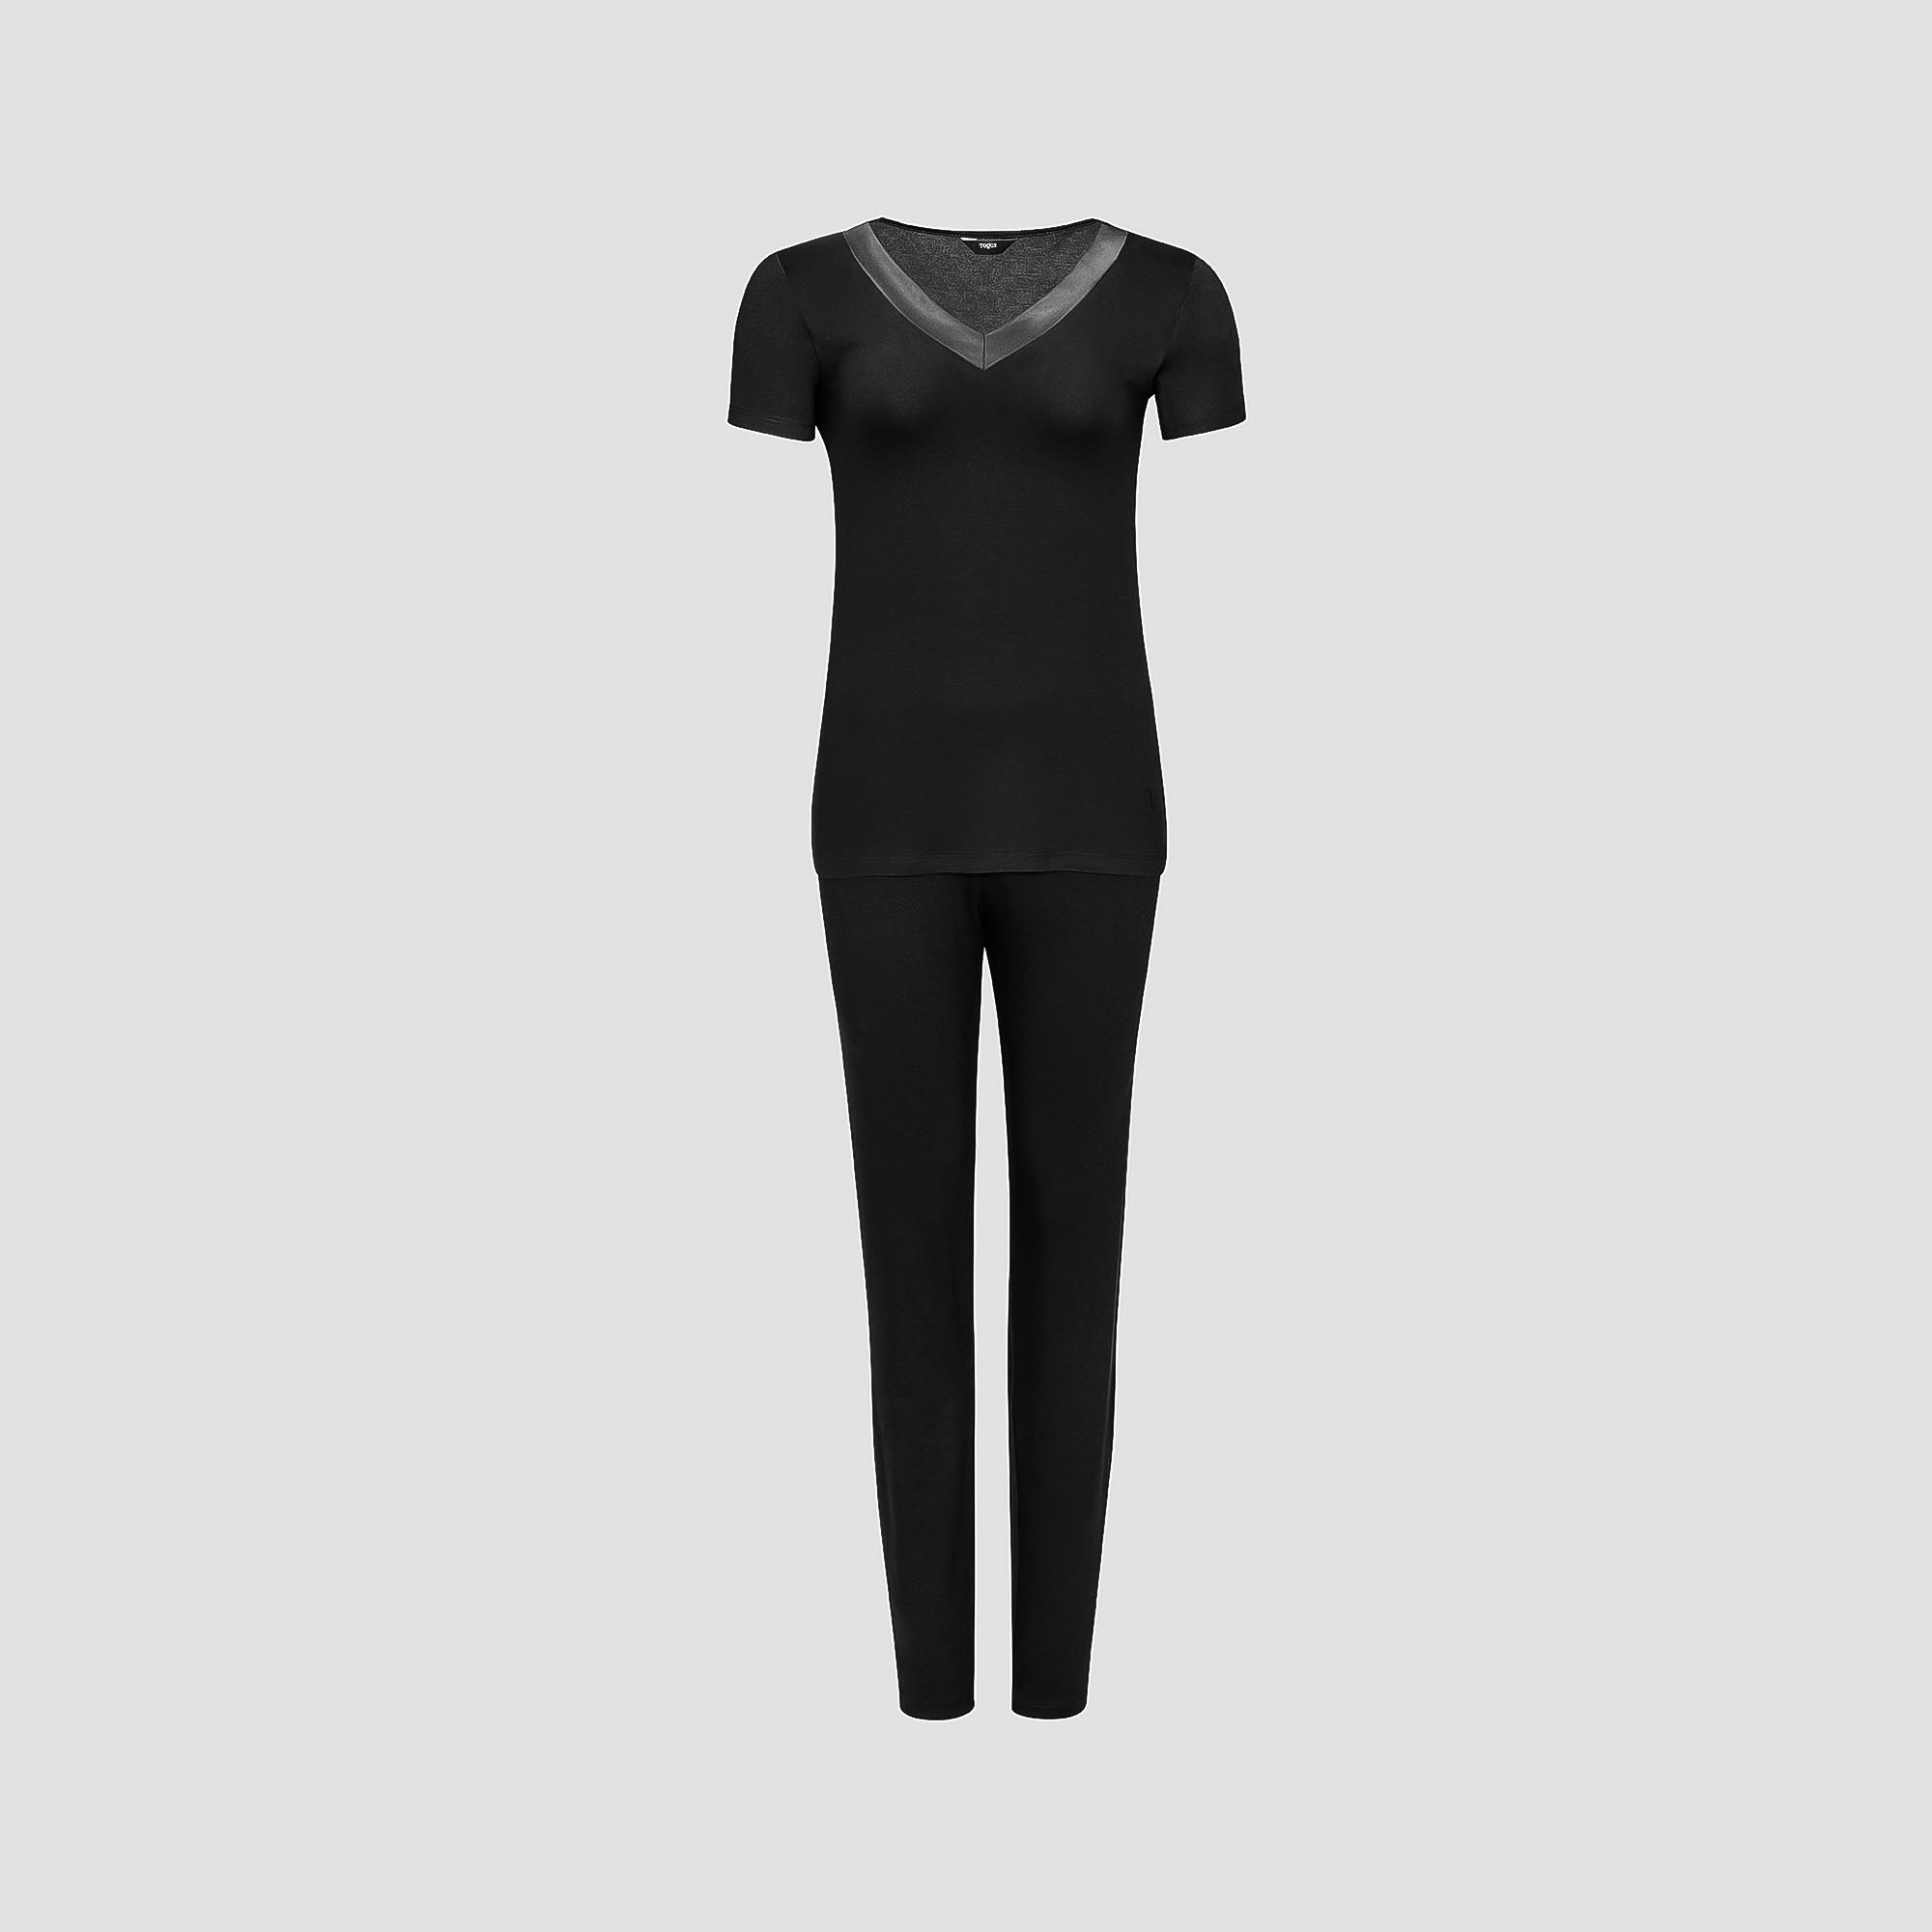 Пижама Togas Ингелла черная женская XL(50) 2 предмета жен пижама арт 16 0661 голубой р 52